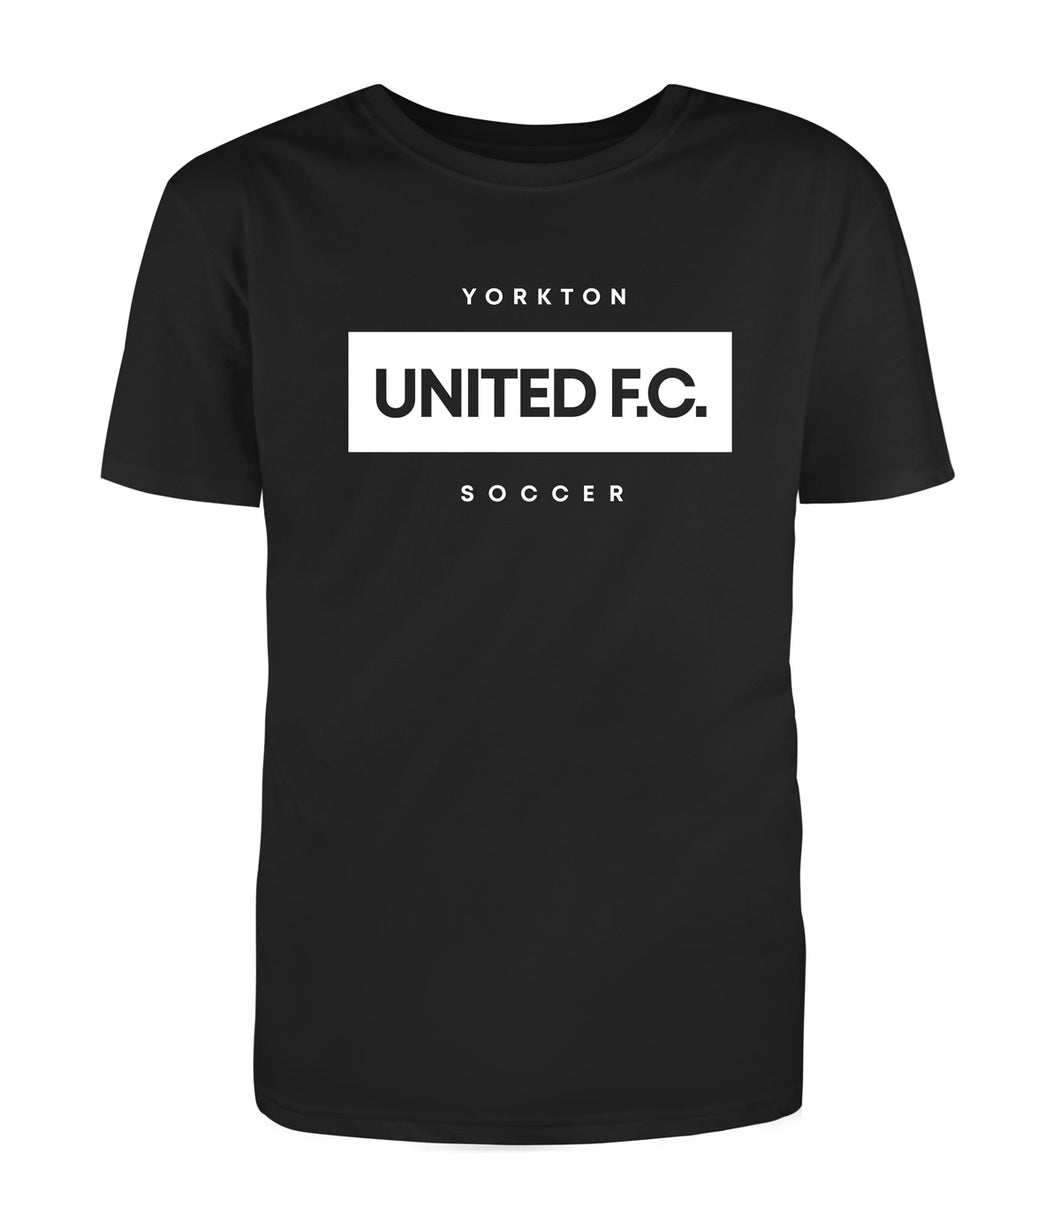 The UNITED FC T-Shirt